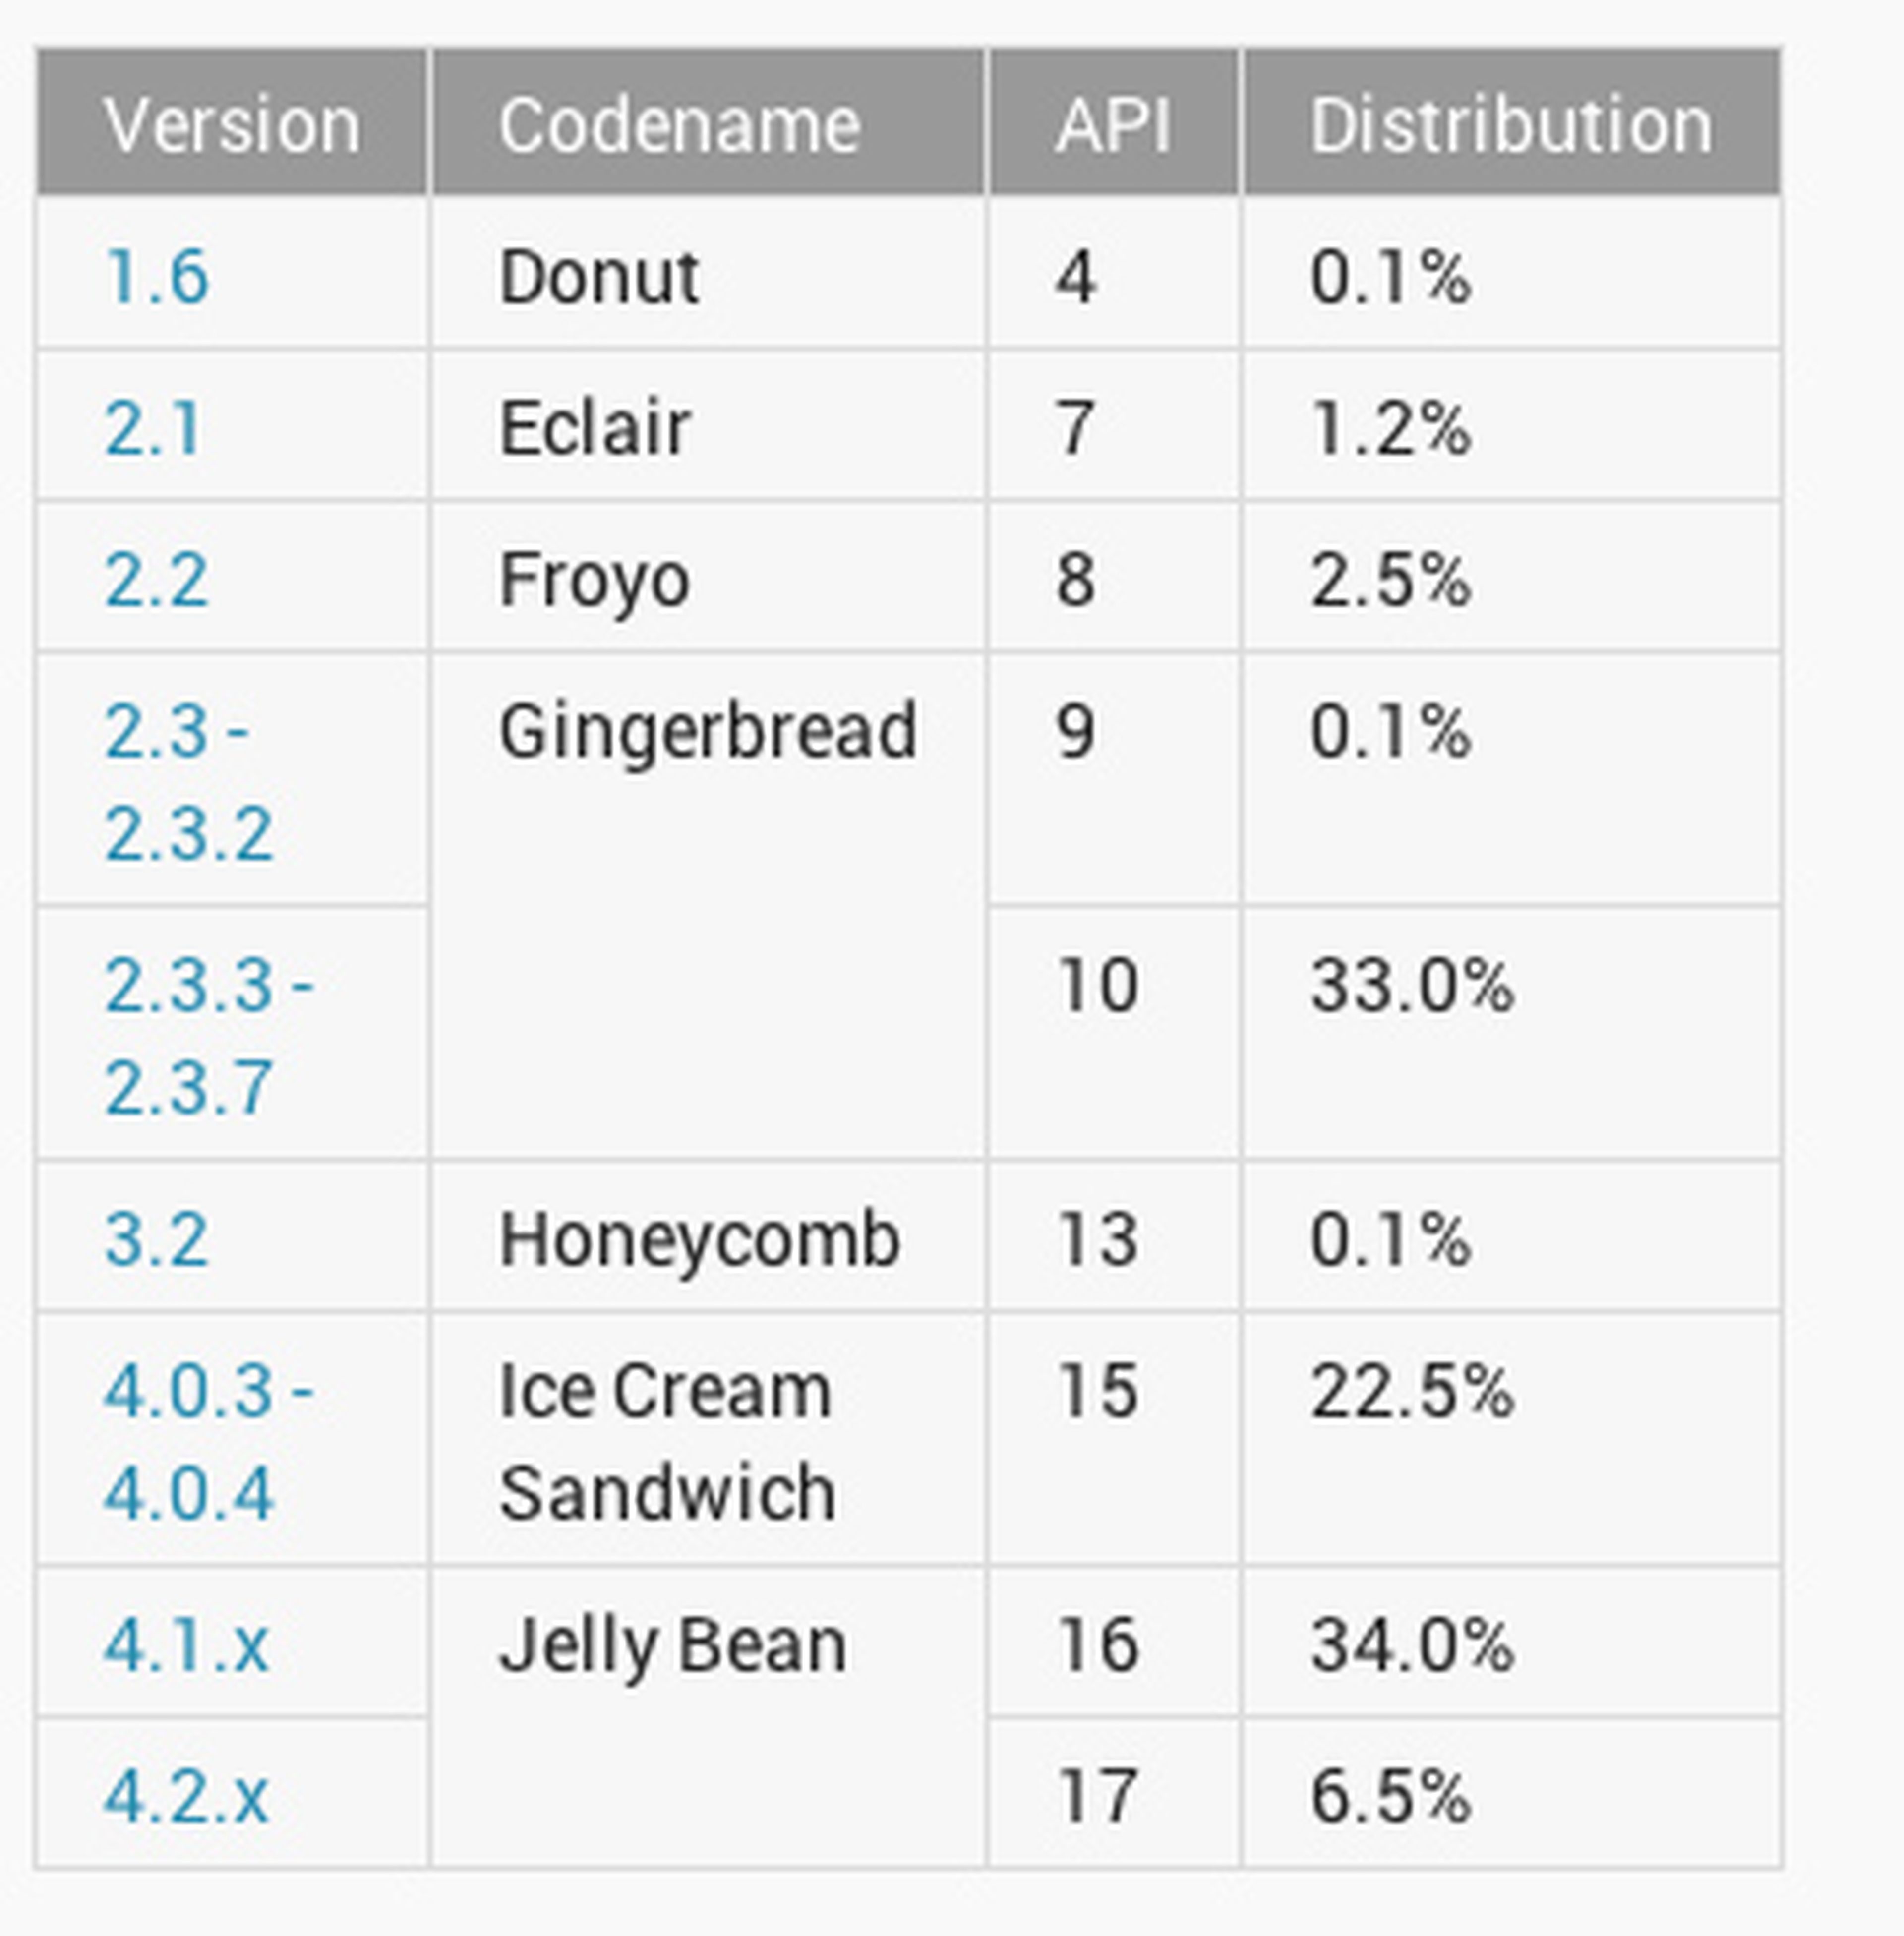 Distribución de versiones de Android